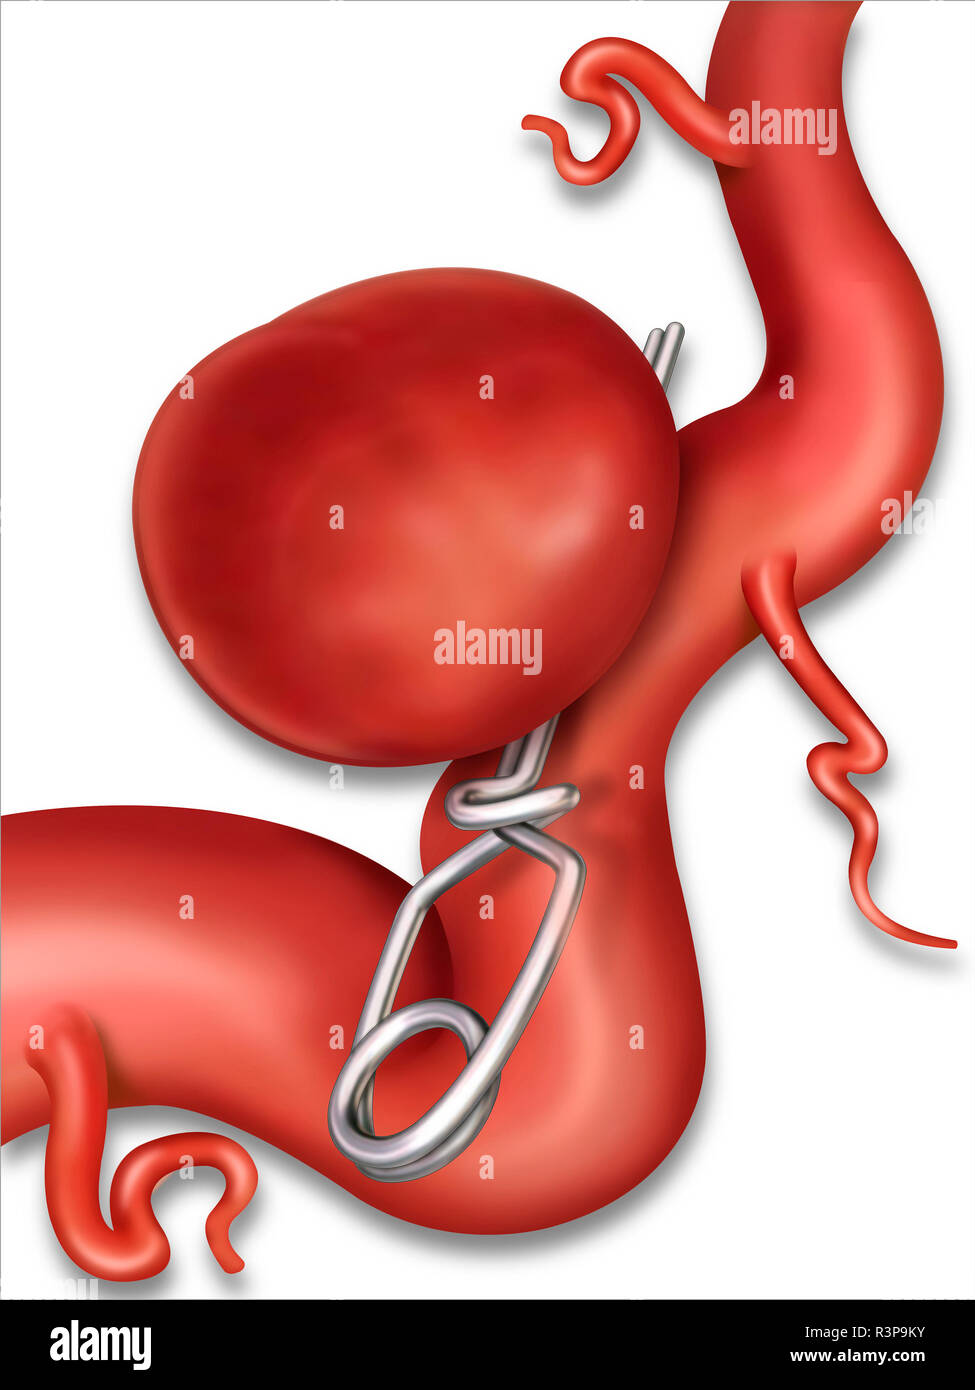 Clipping ist die Operation eines Hirnaneurysmas in einer Arterie. Es ist die Wand eines Blutgefäßes, die es auswölben und überlaufen lässt und brechen kann. Stockfoto